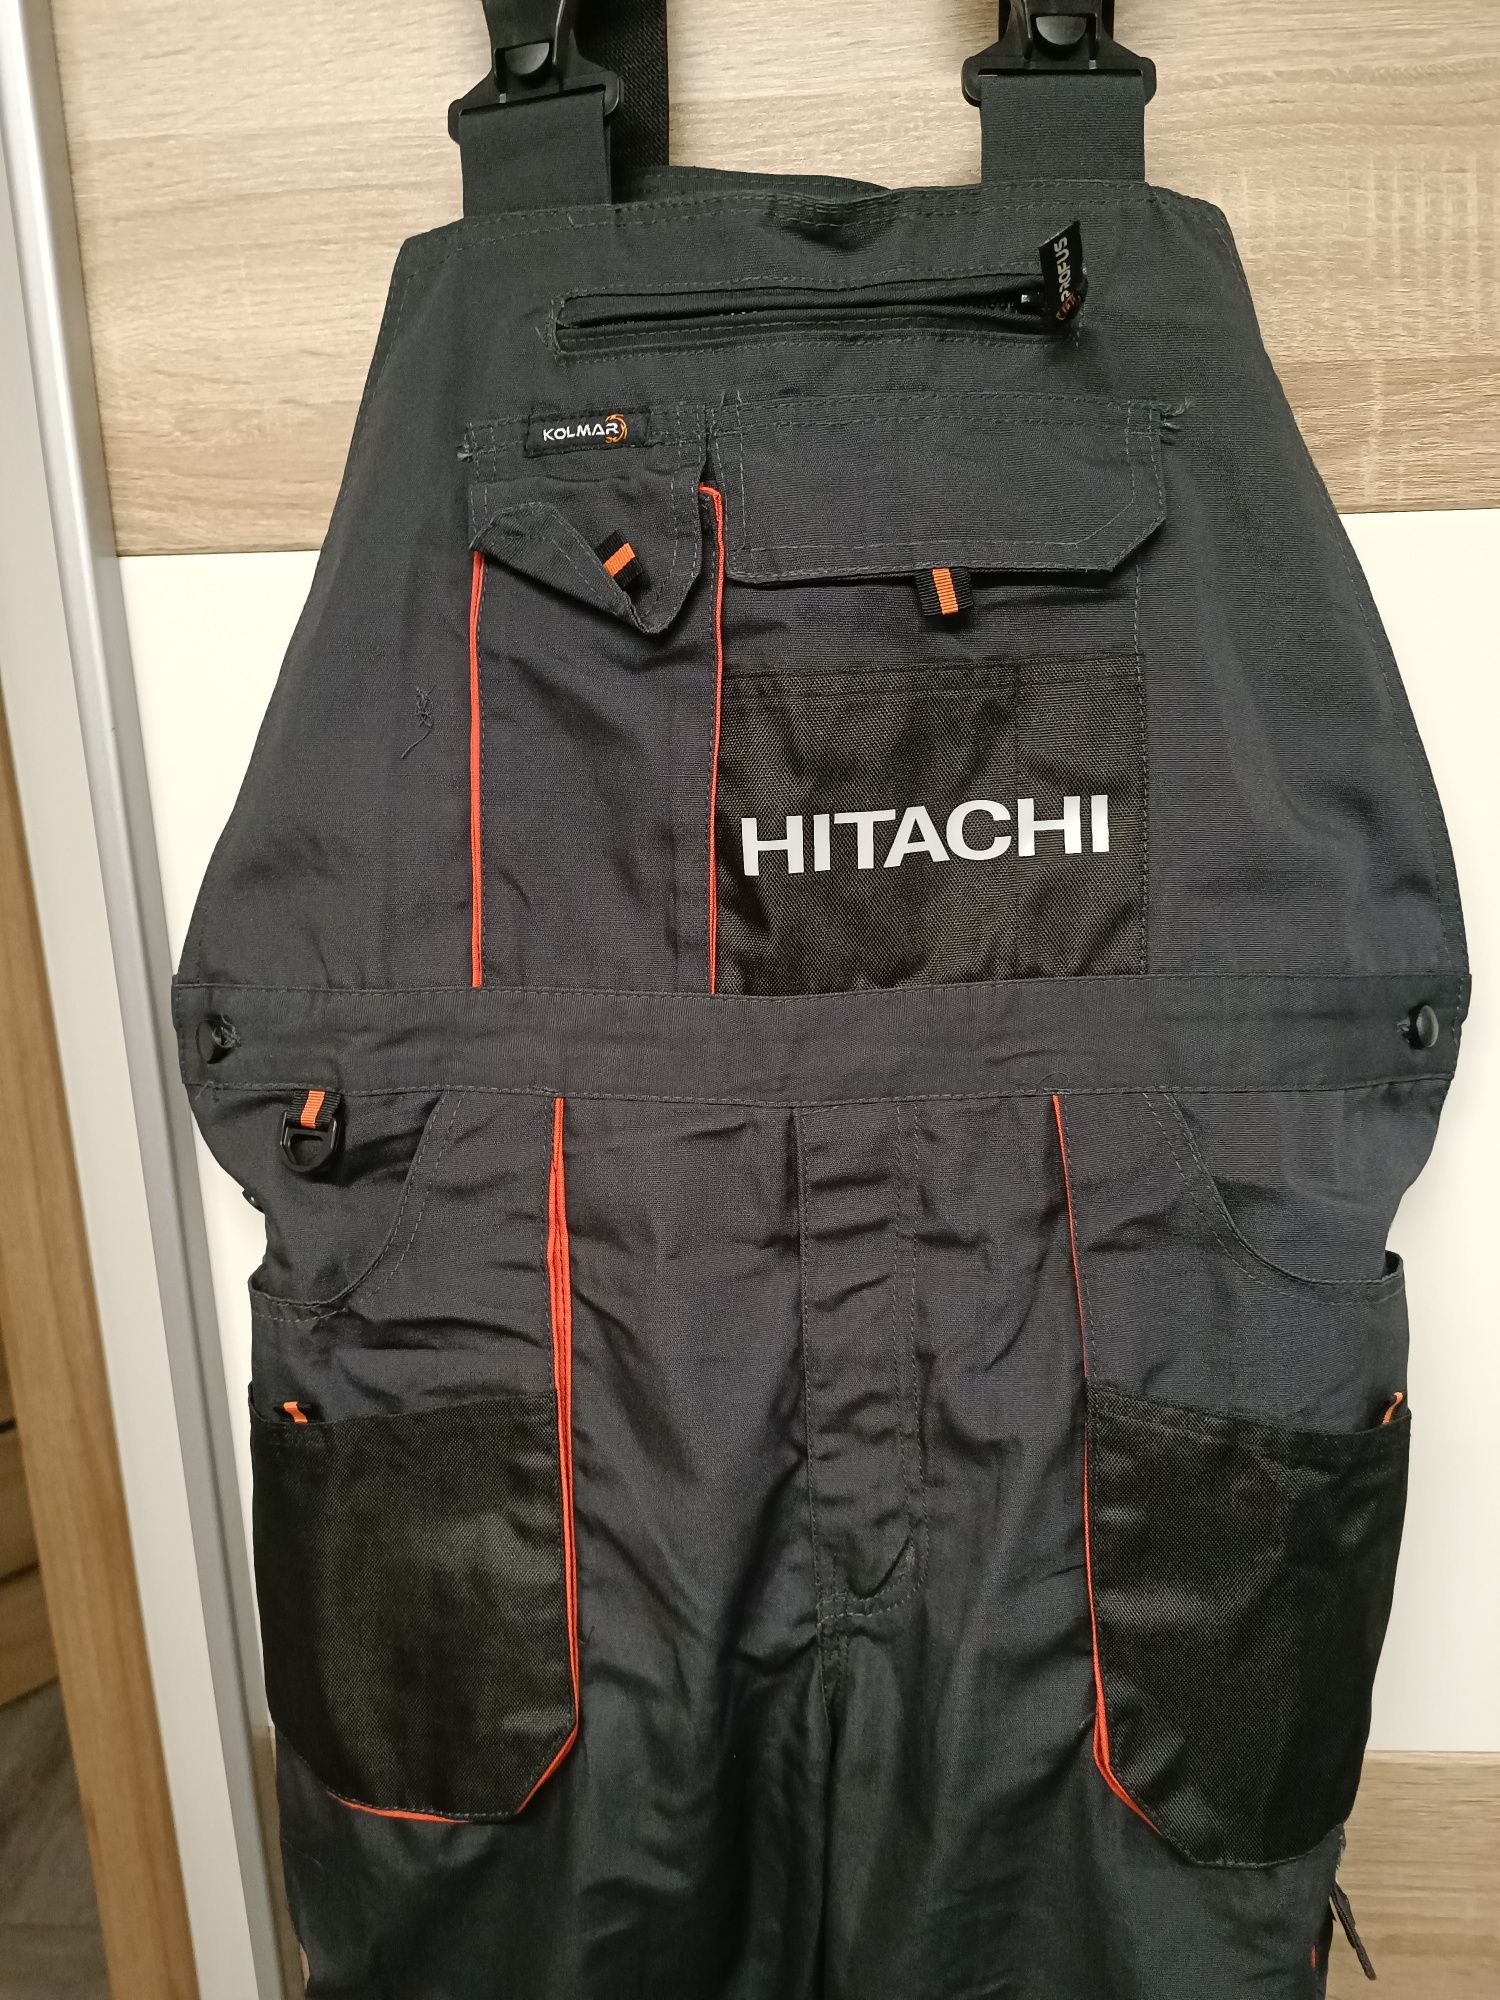 Spodnie na szelkach i kurtka z logiem Hitachi